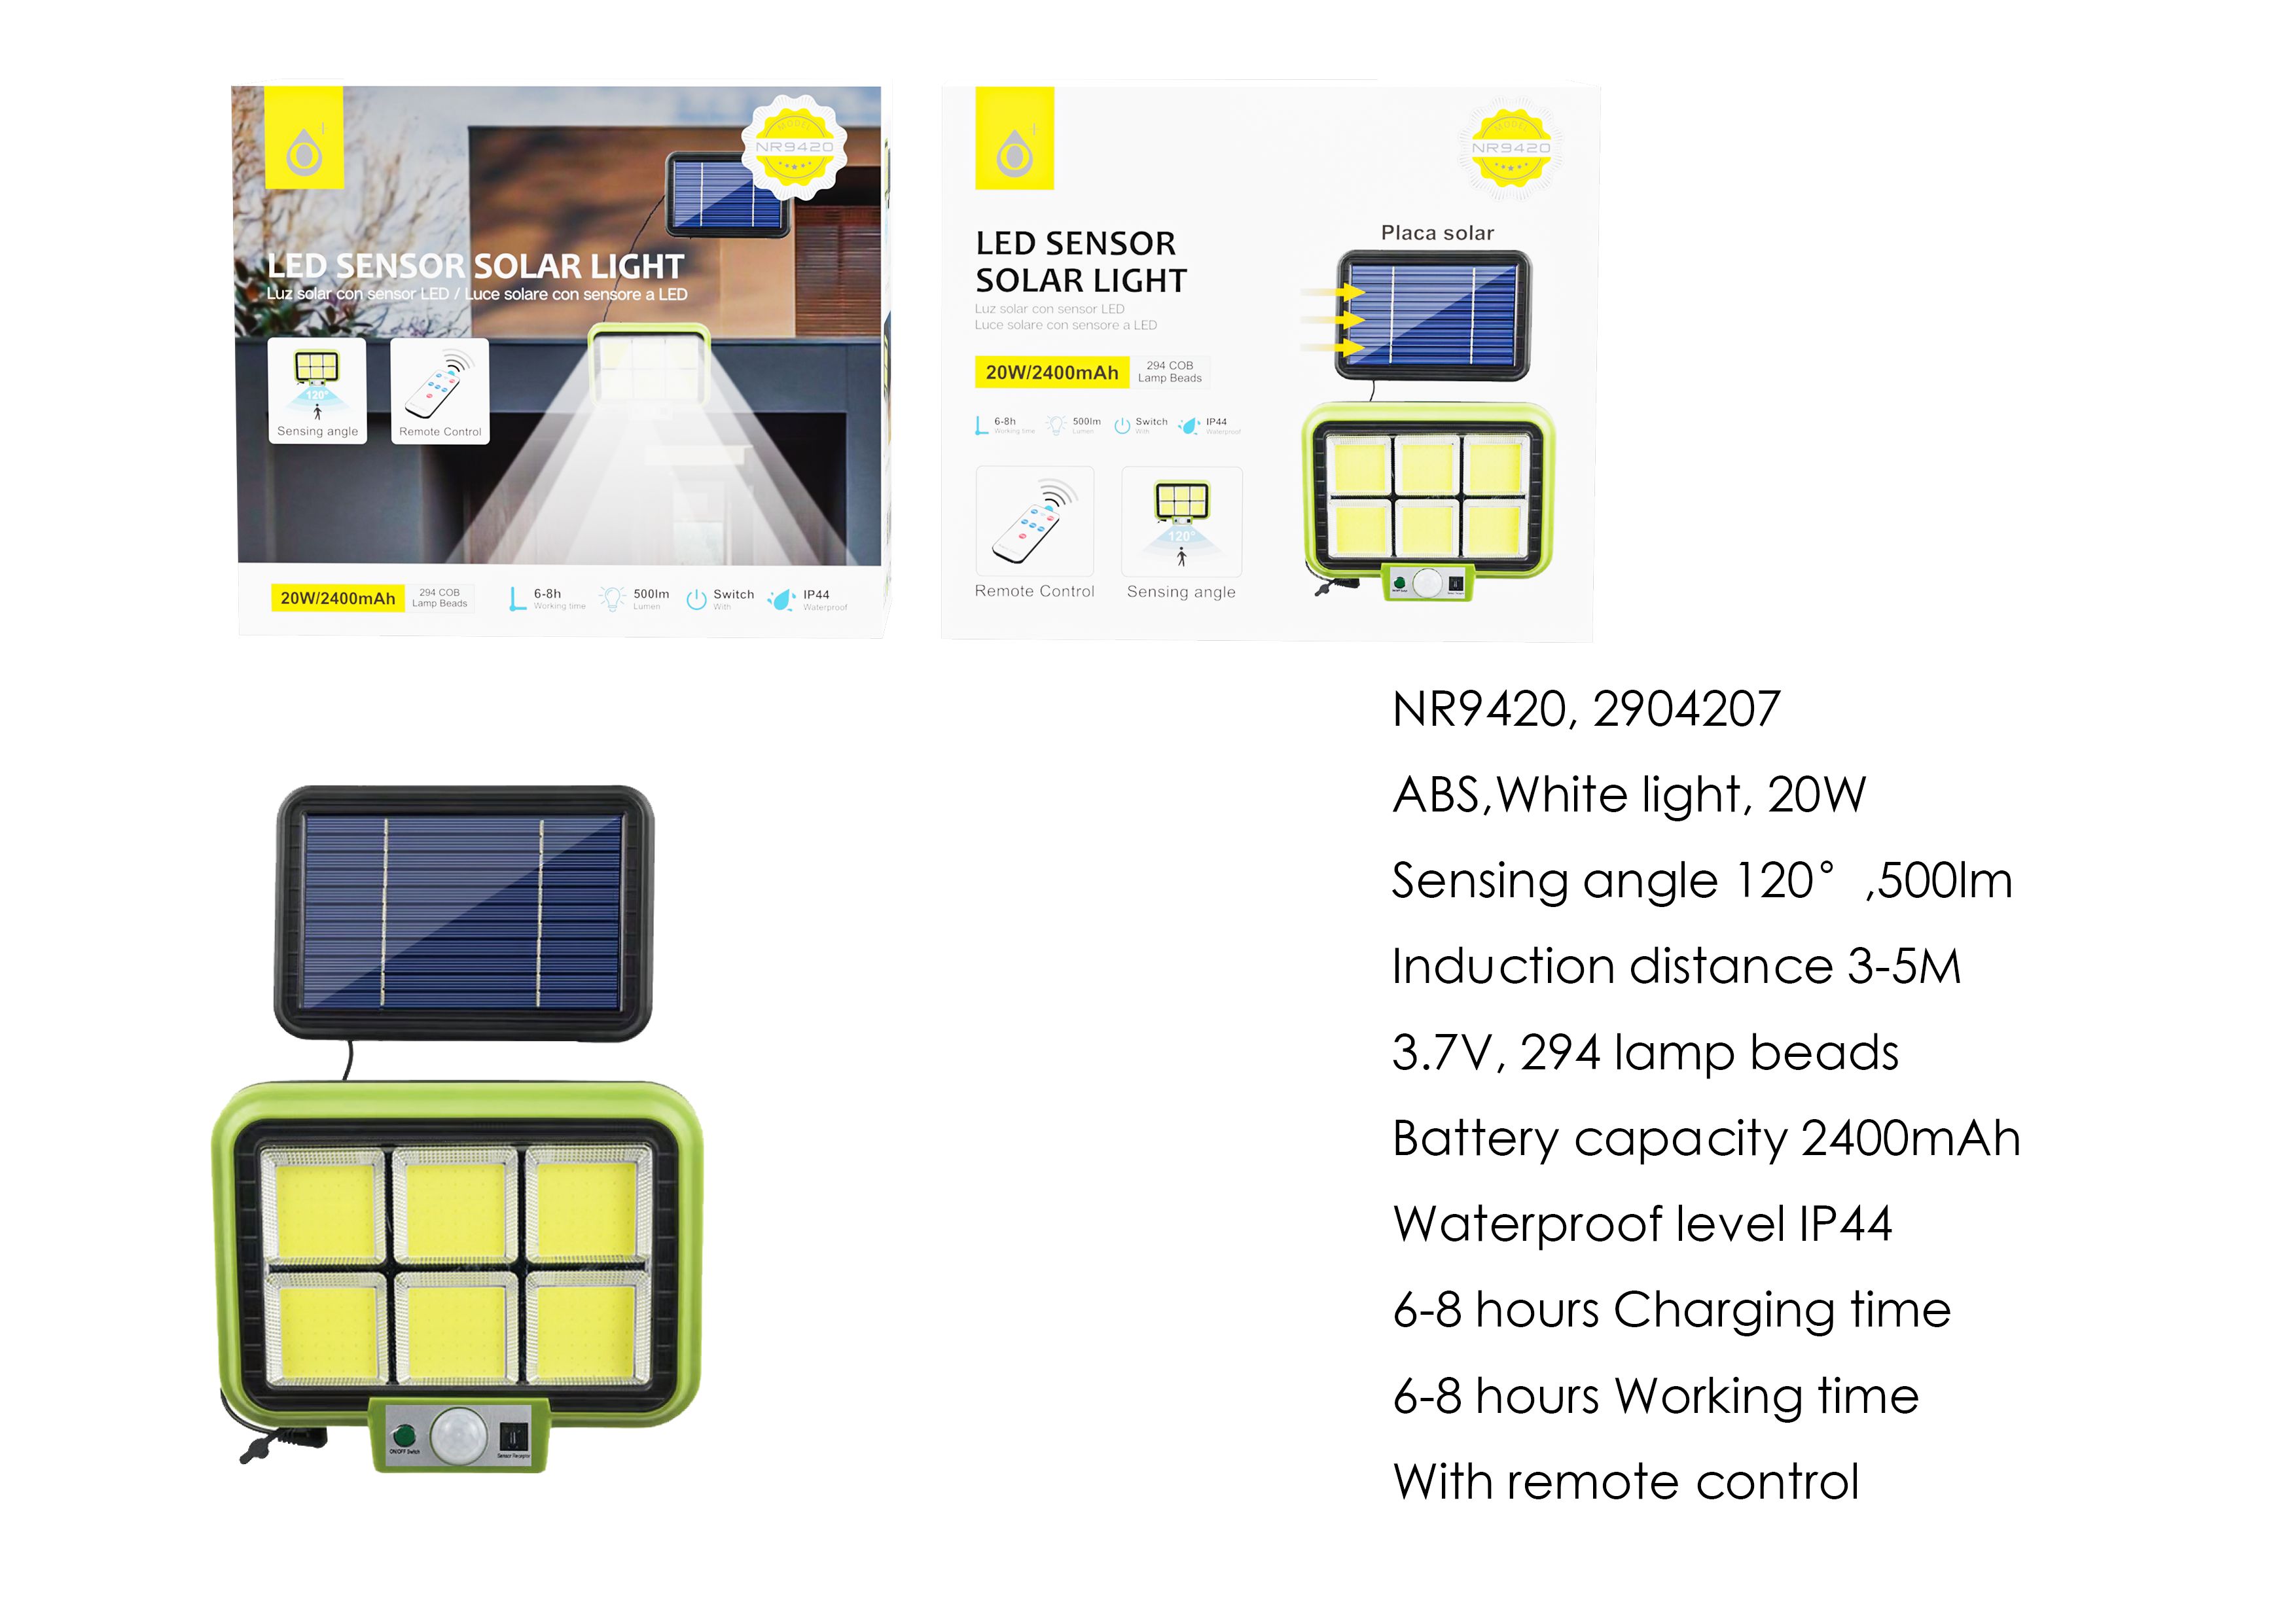 NR9420 NE Lampara solar LED con 294 luces para exterior incluye mando, con sensor de movimiento 3-5m, Angulo de  120°,IP44,20W/2400mAh/3.7v/500lumen,